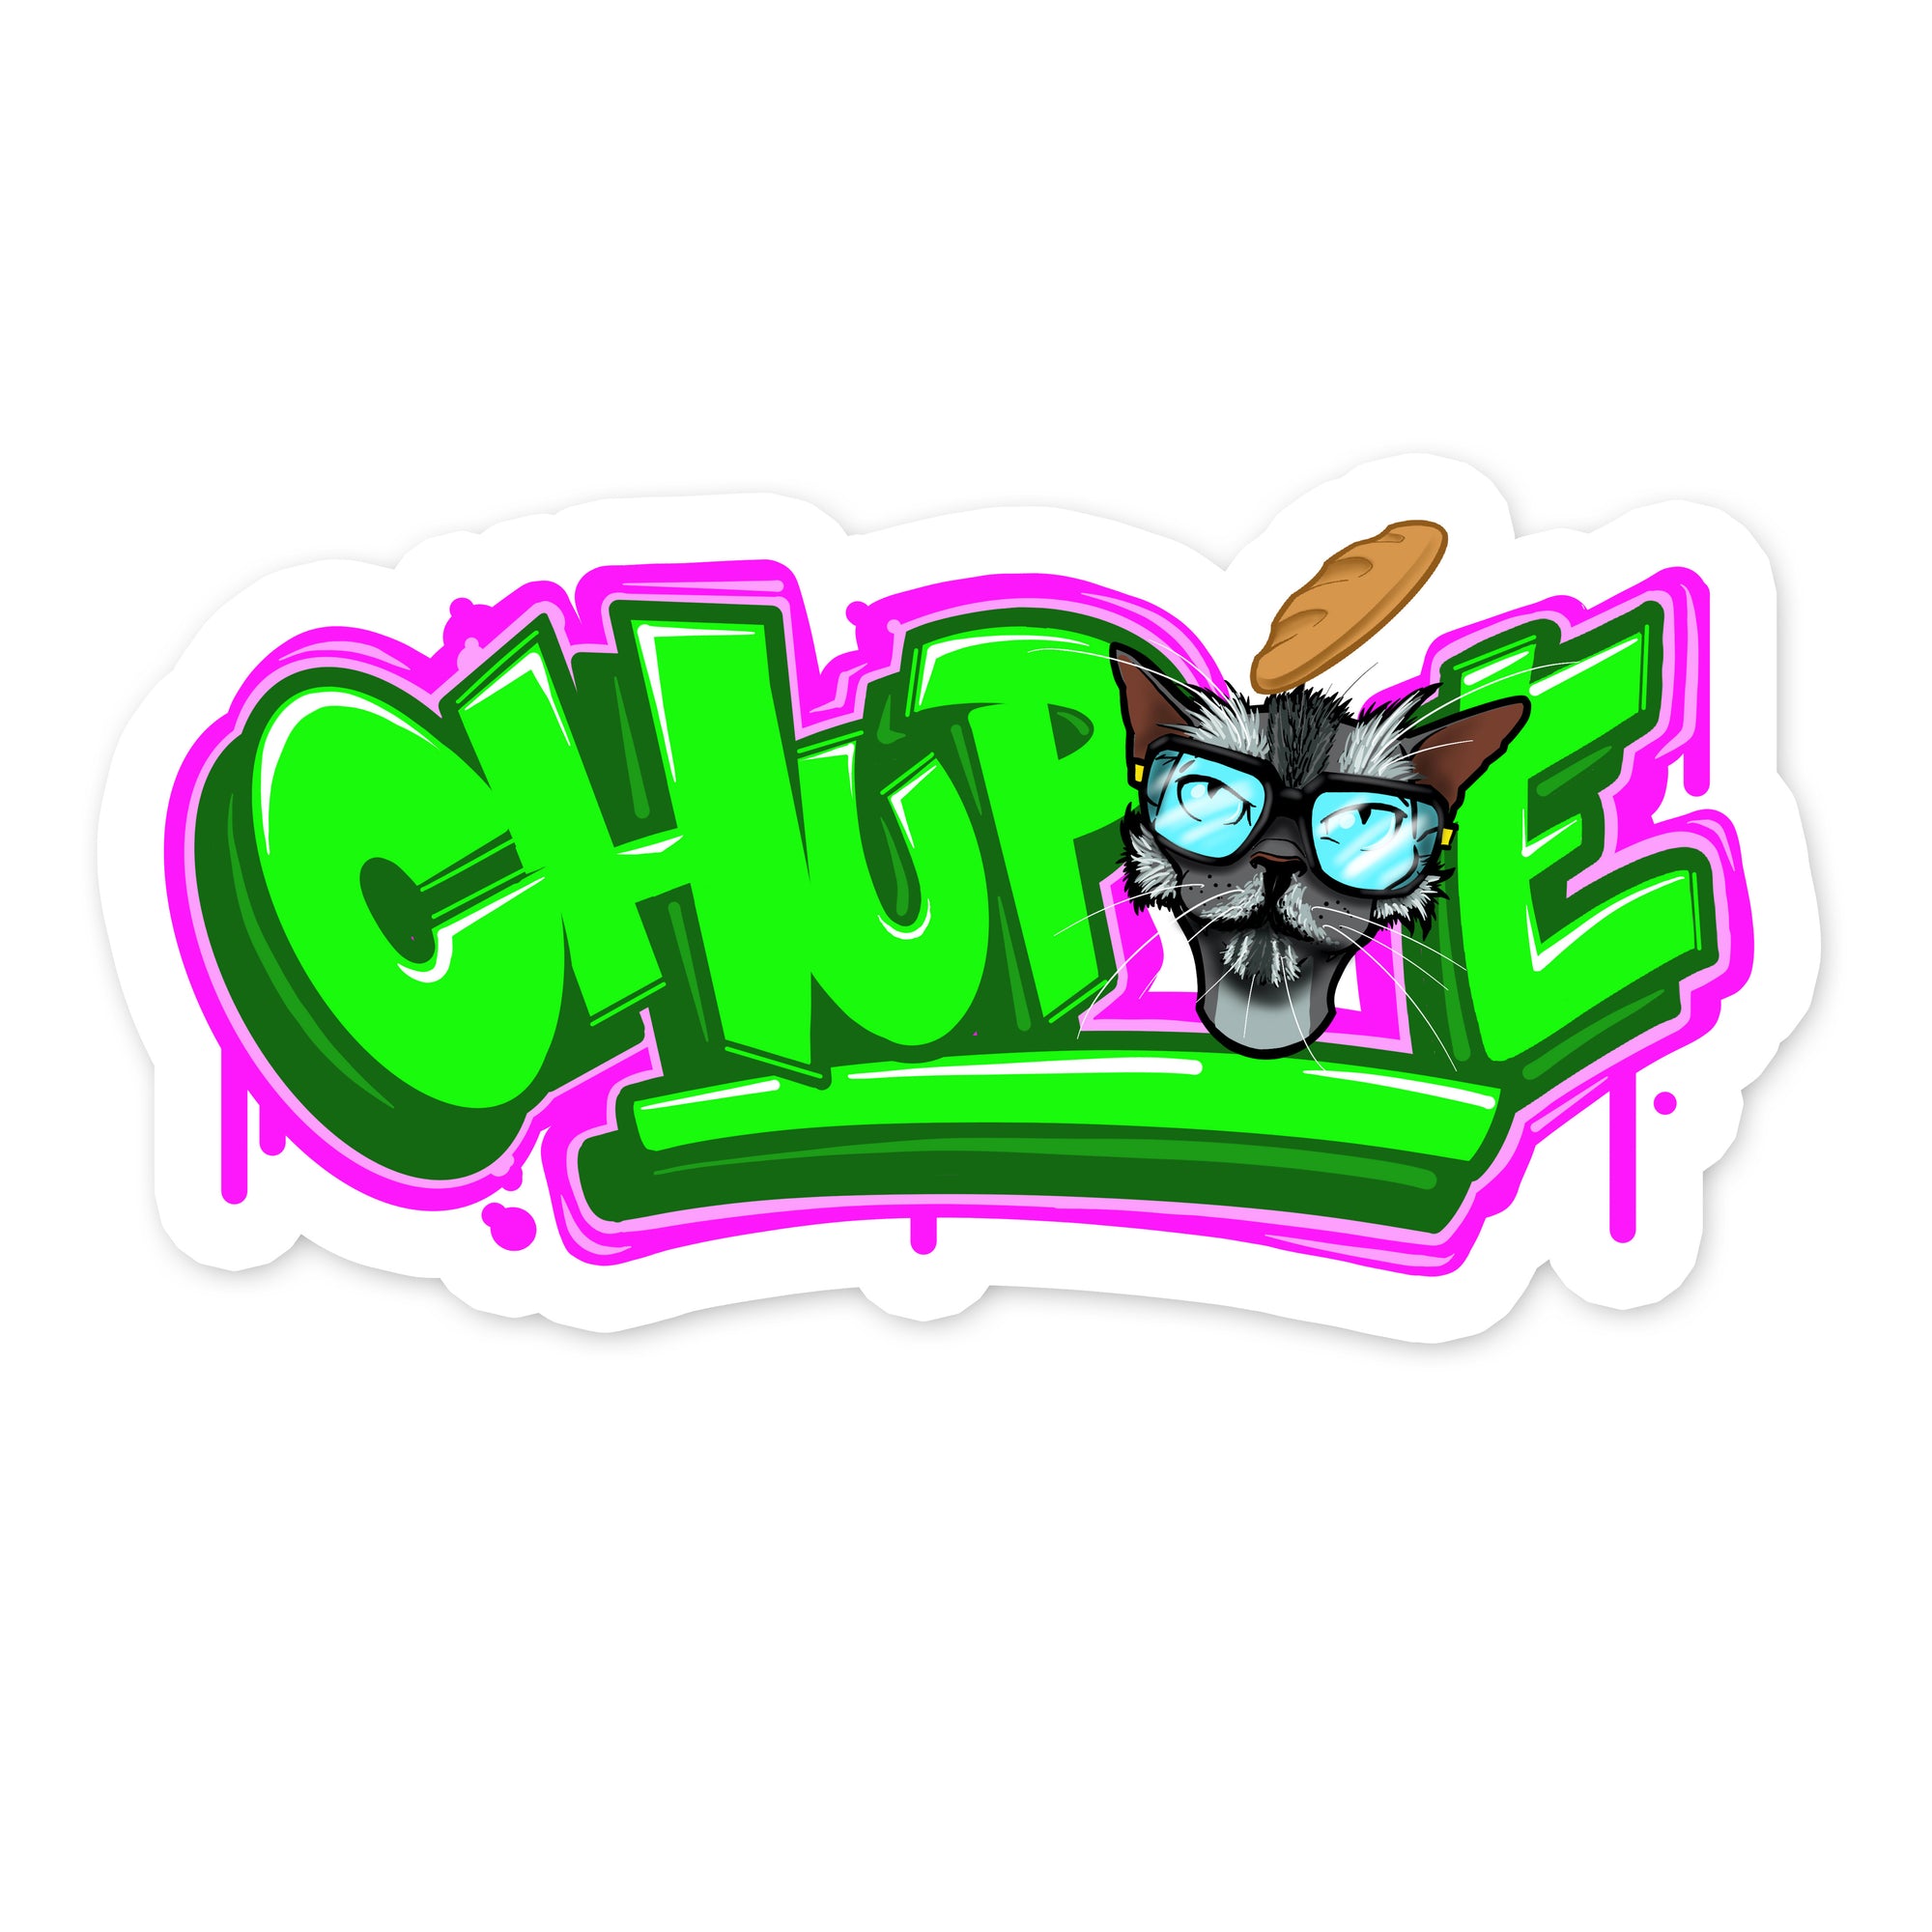 Chupie Graffiti Sticker